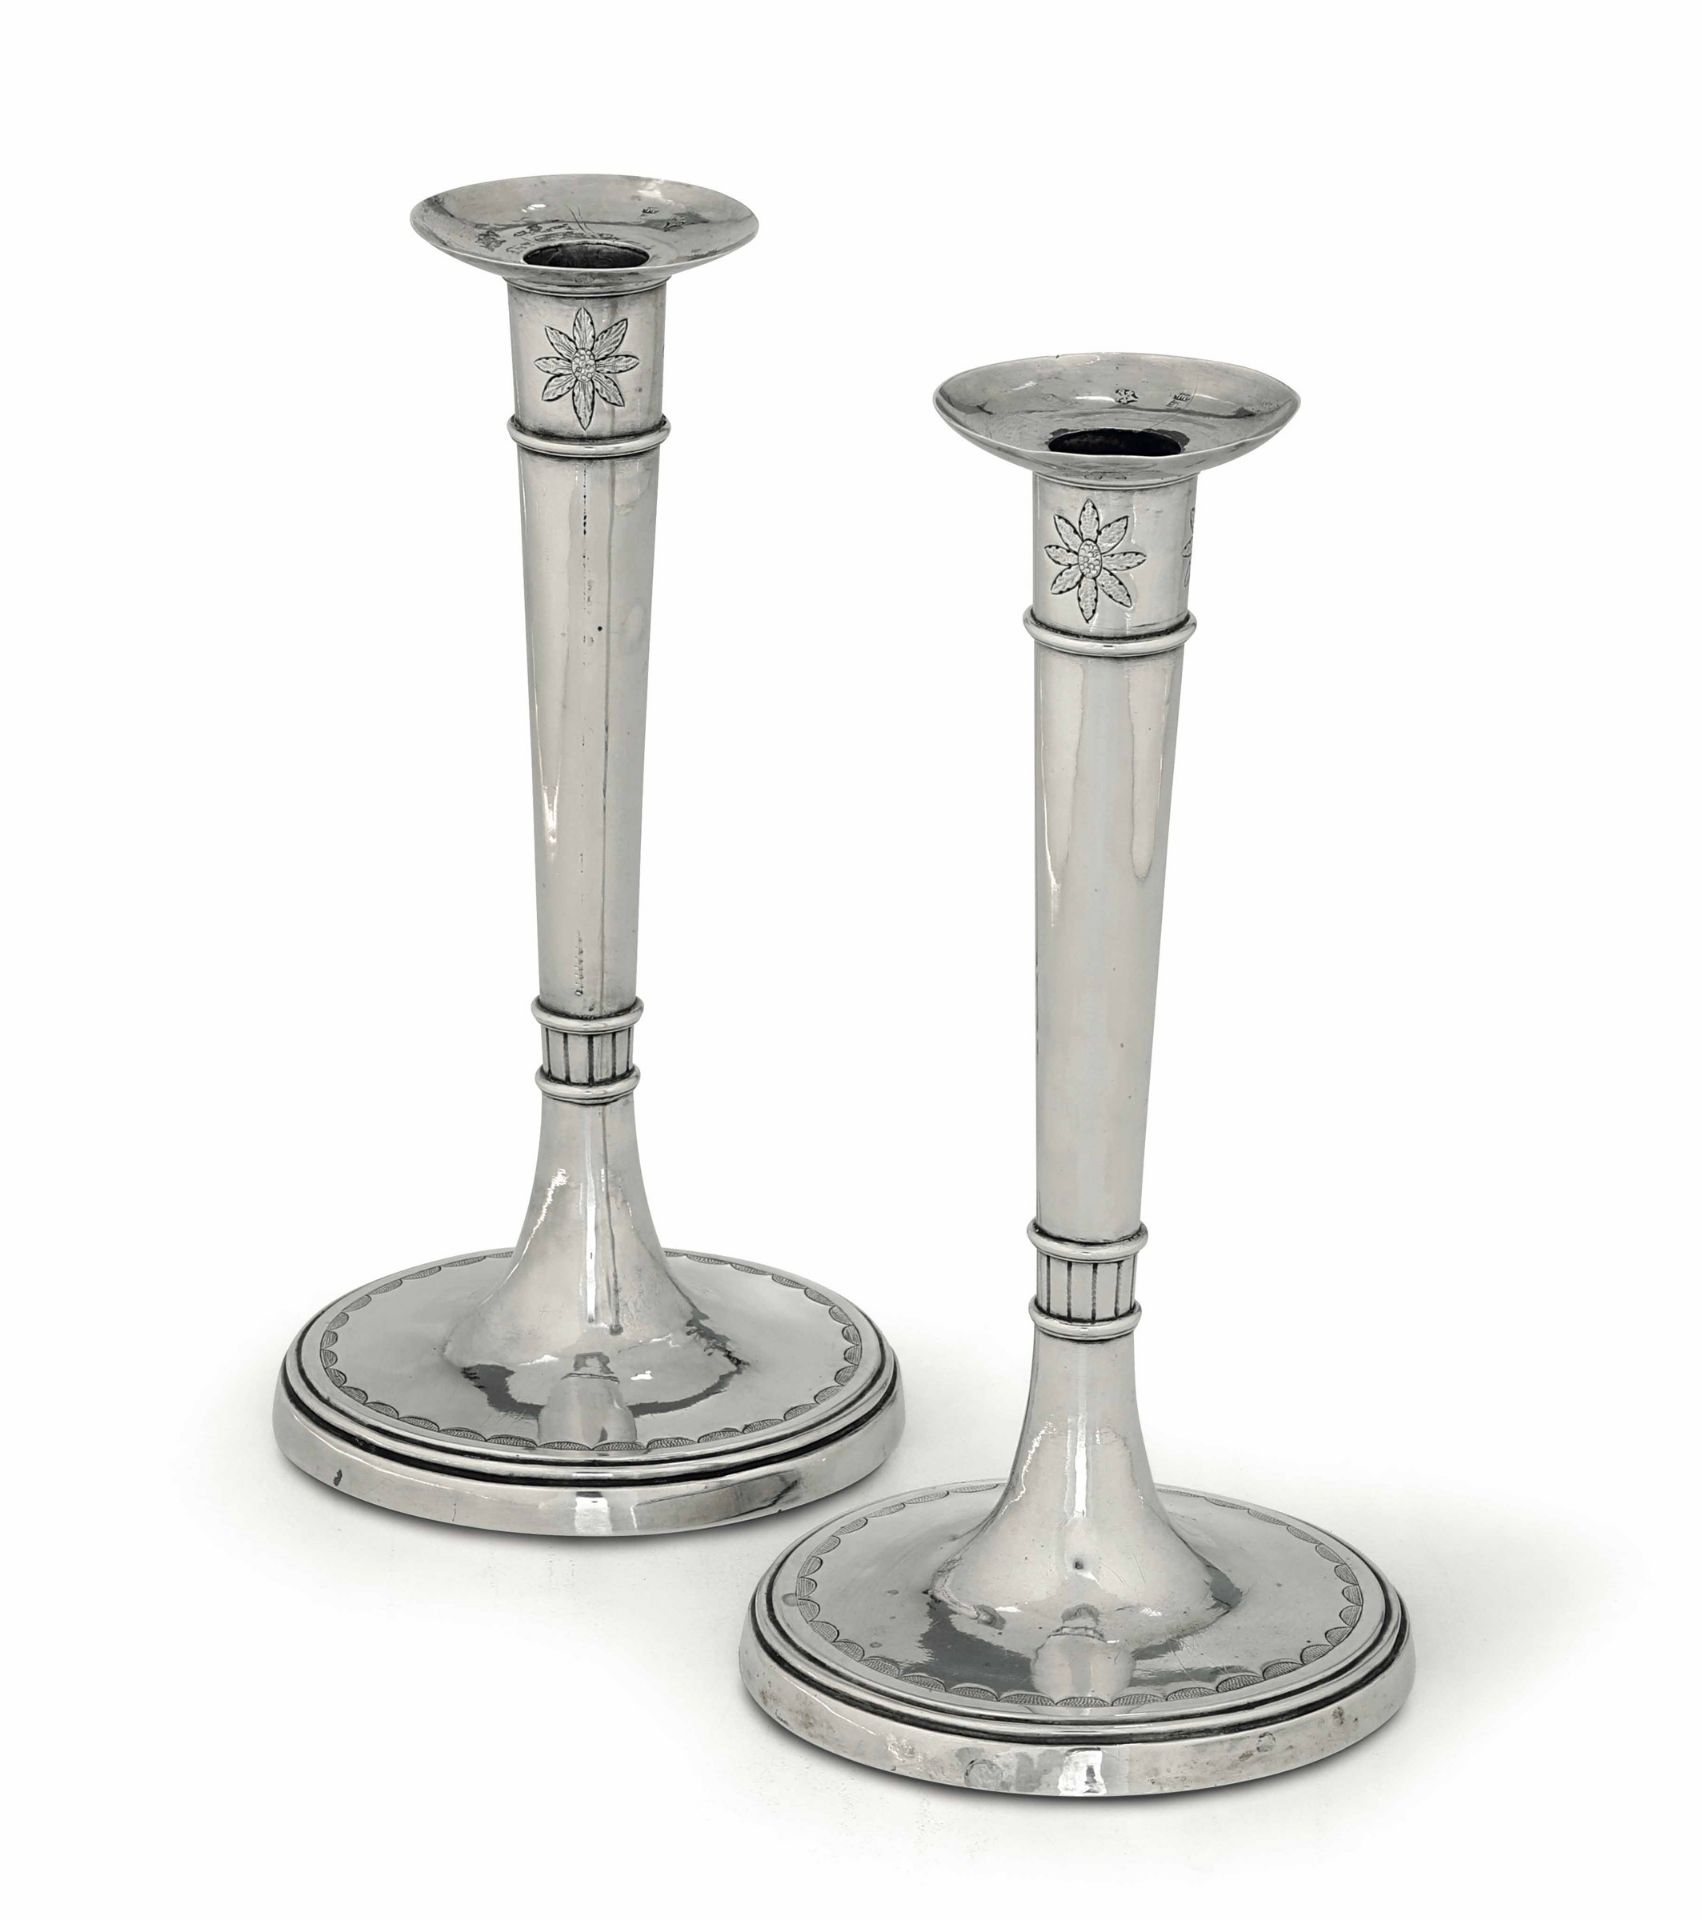 Two candlesticks, Rome, 1800s, V. Torre - 405gr, H. 23.5cm, base diam. 12cm. -